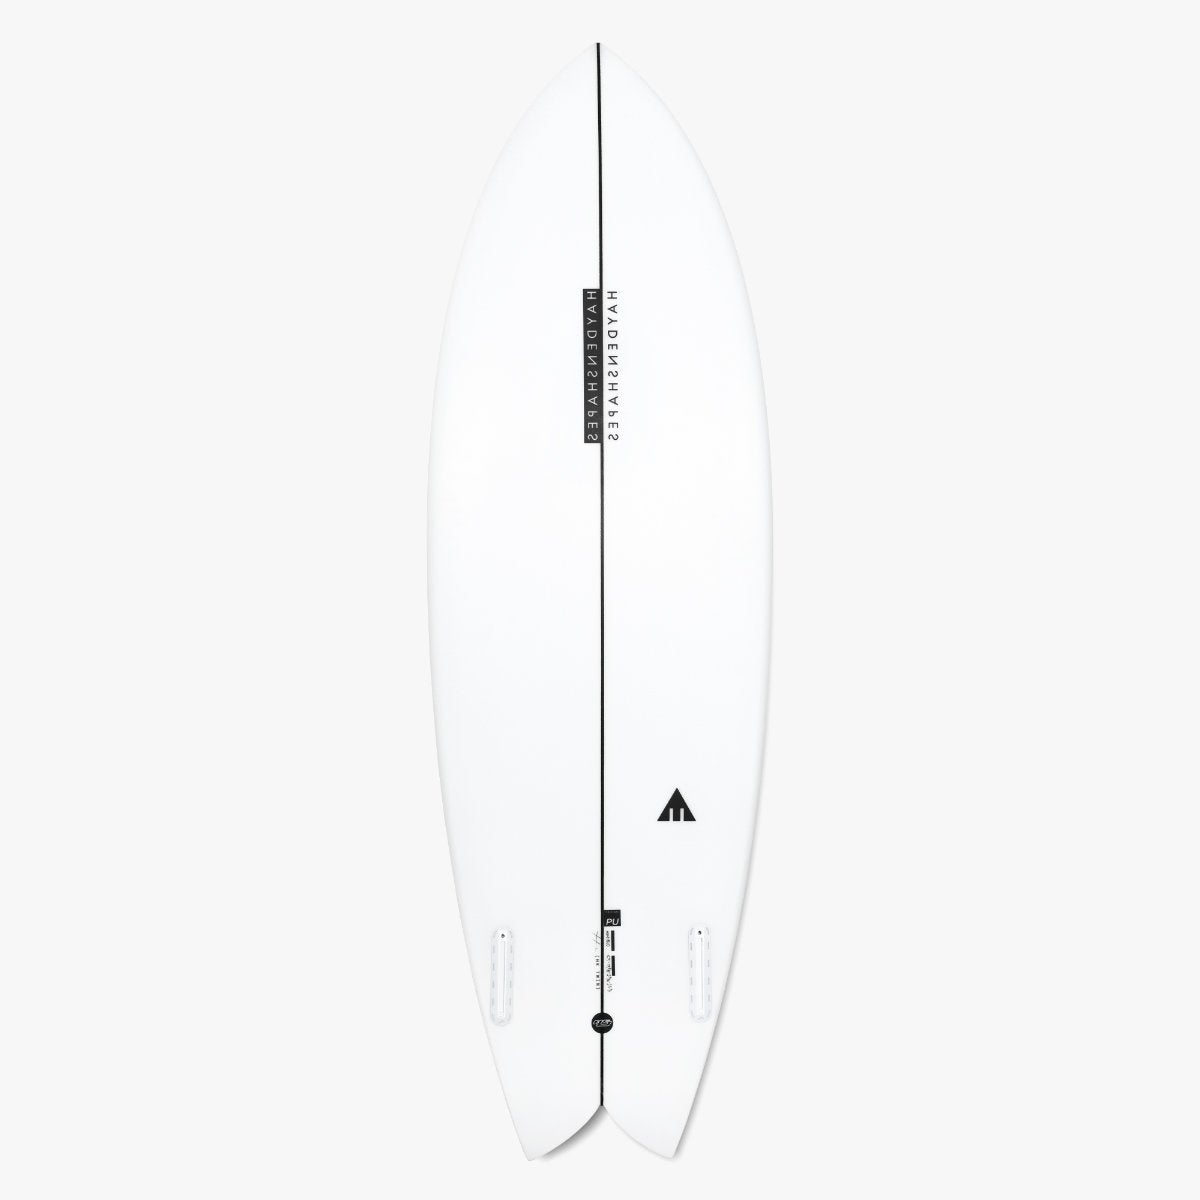 Haydenshapes surfboards - Hypto Kryto - Craig Anderson - Great 